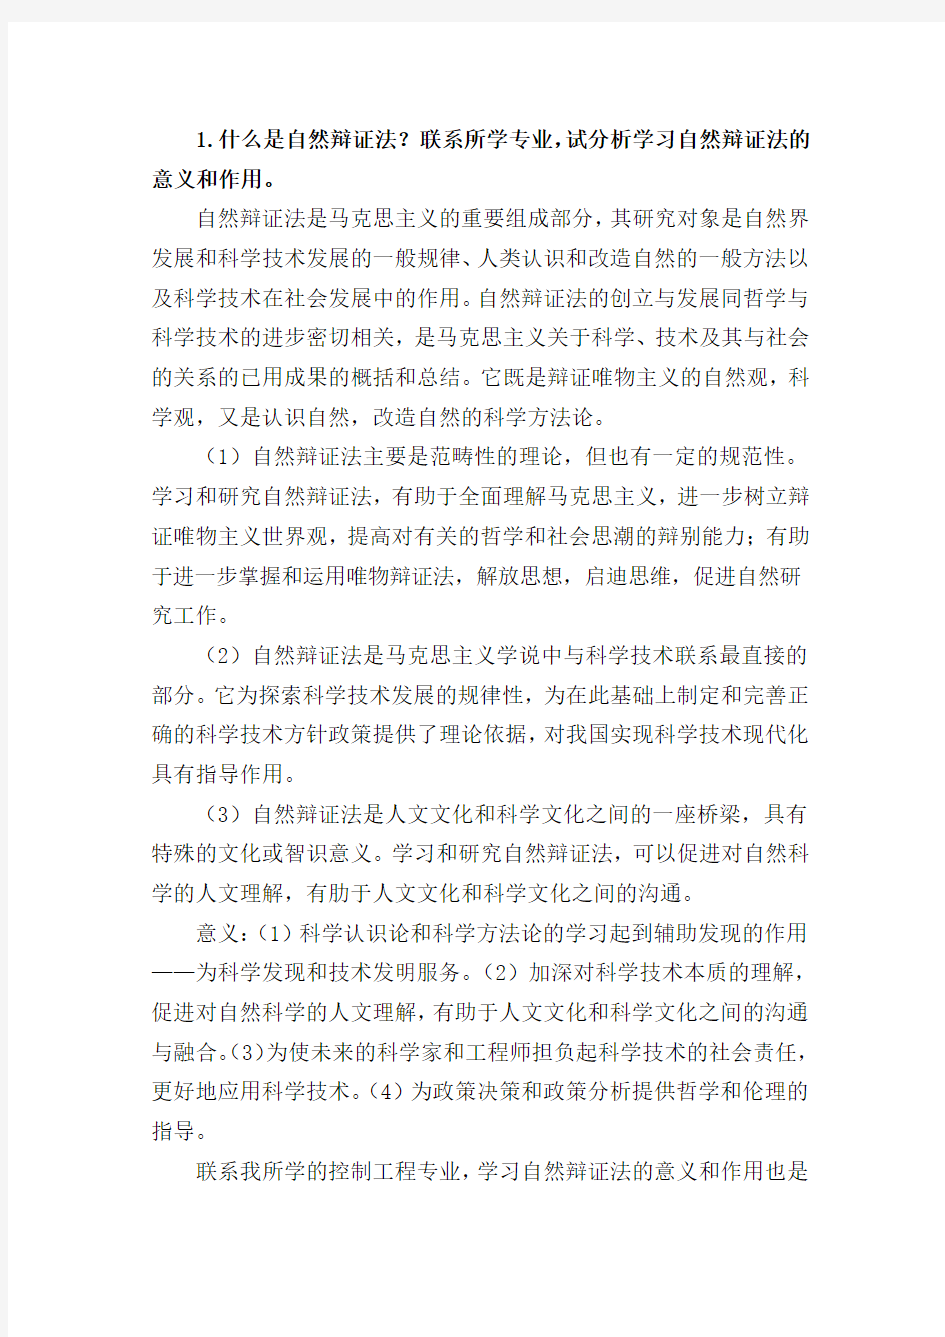 中国矿业大学(北京)2015级自然辩证法考试答案